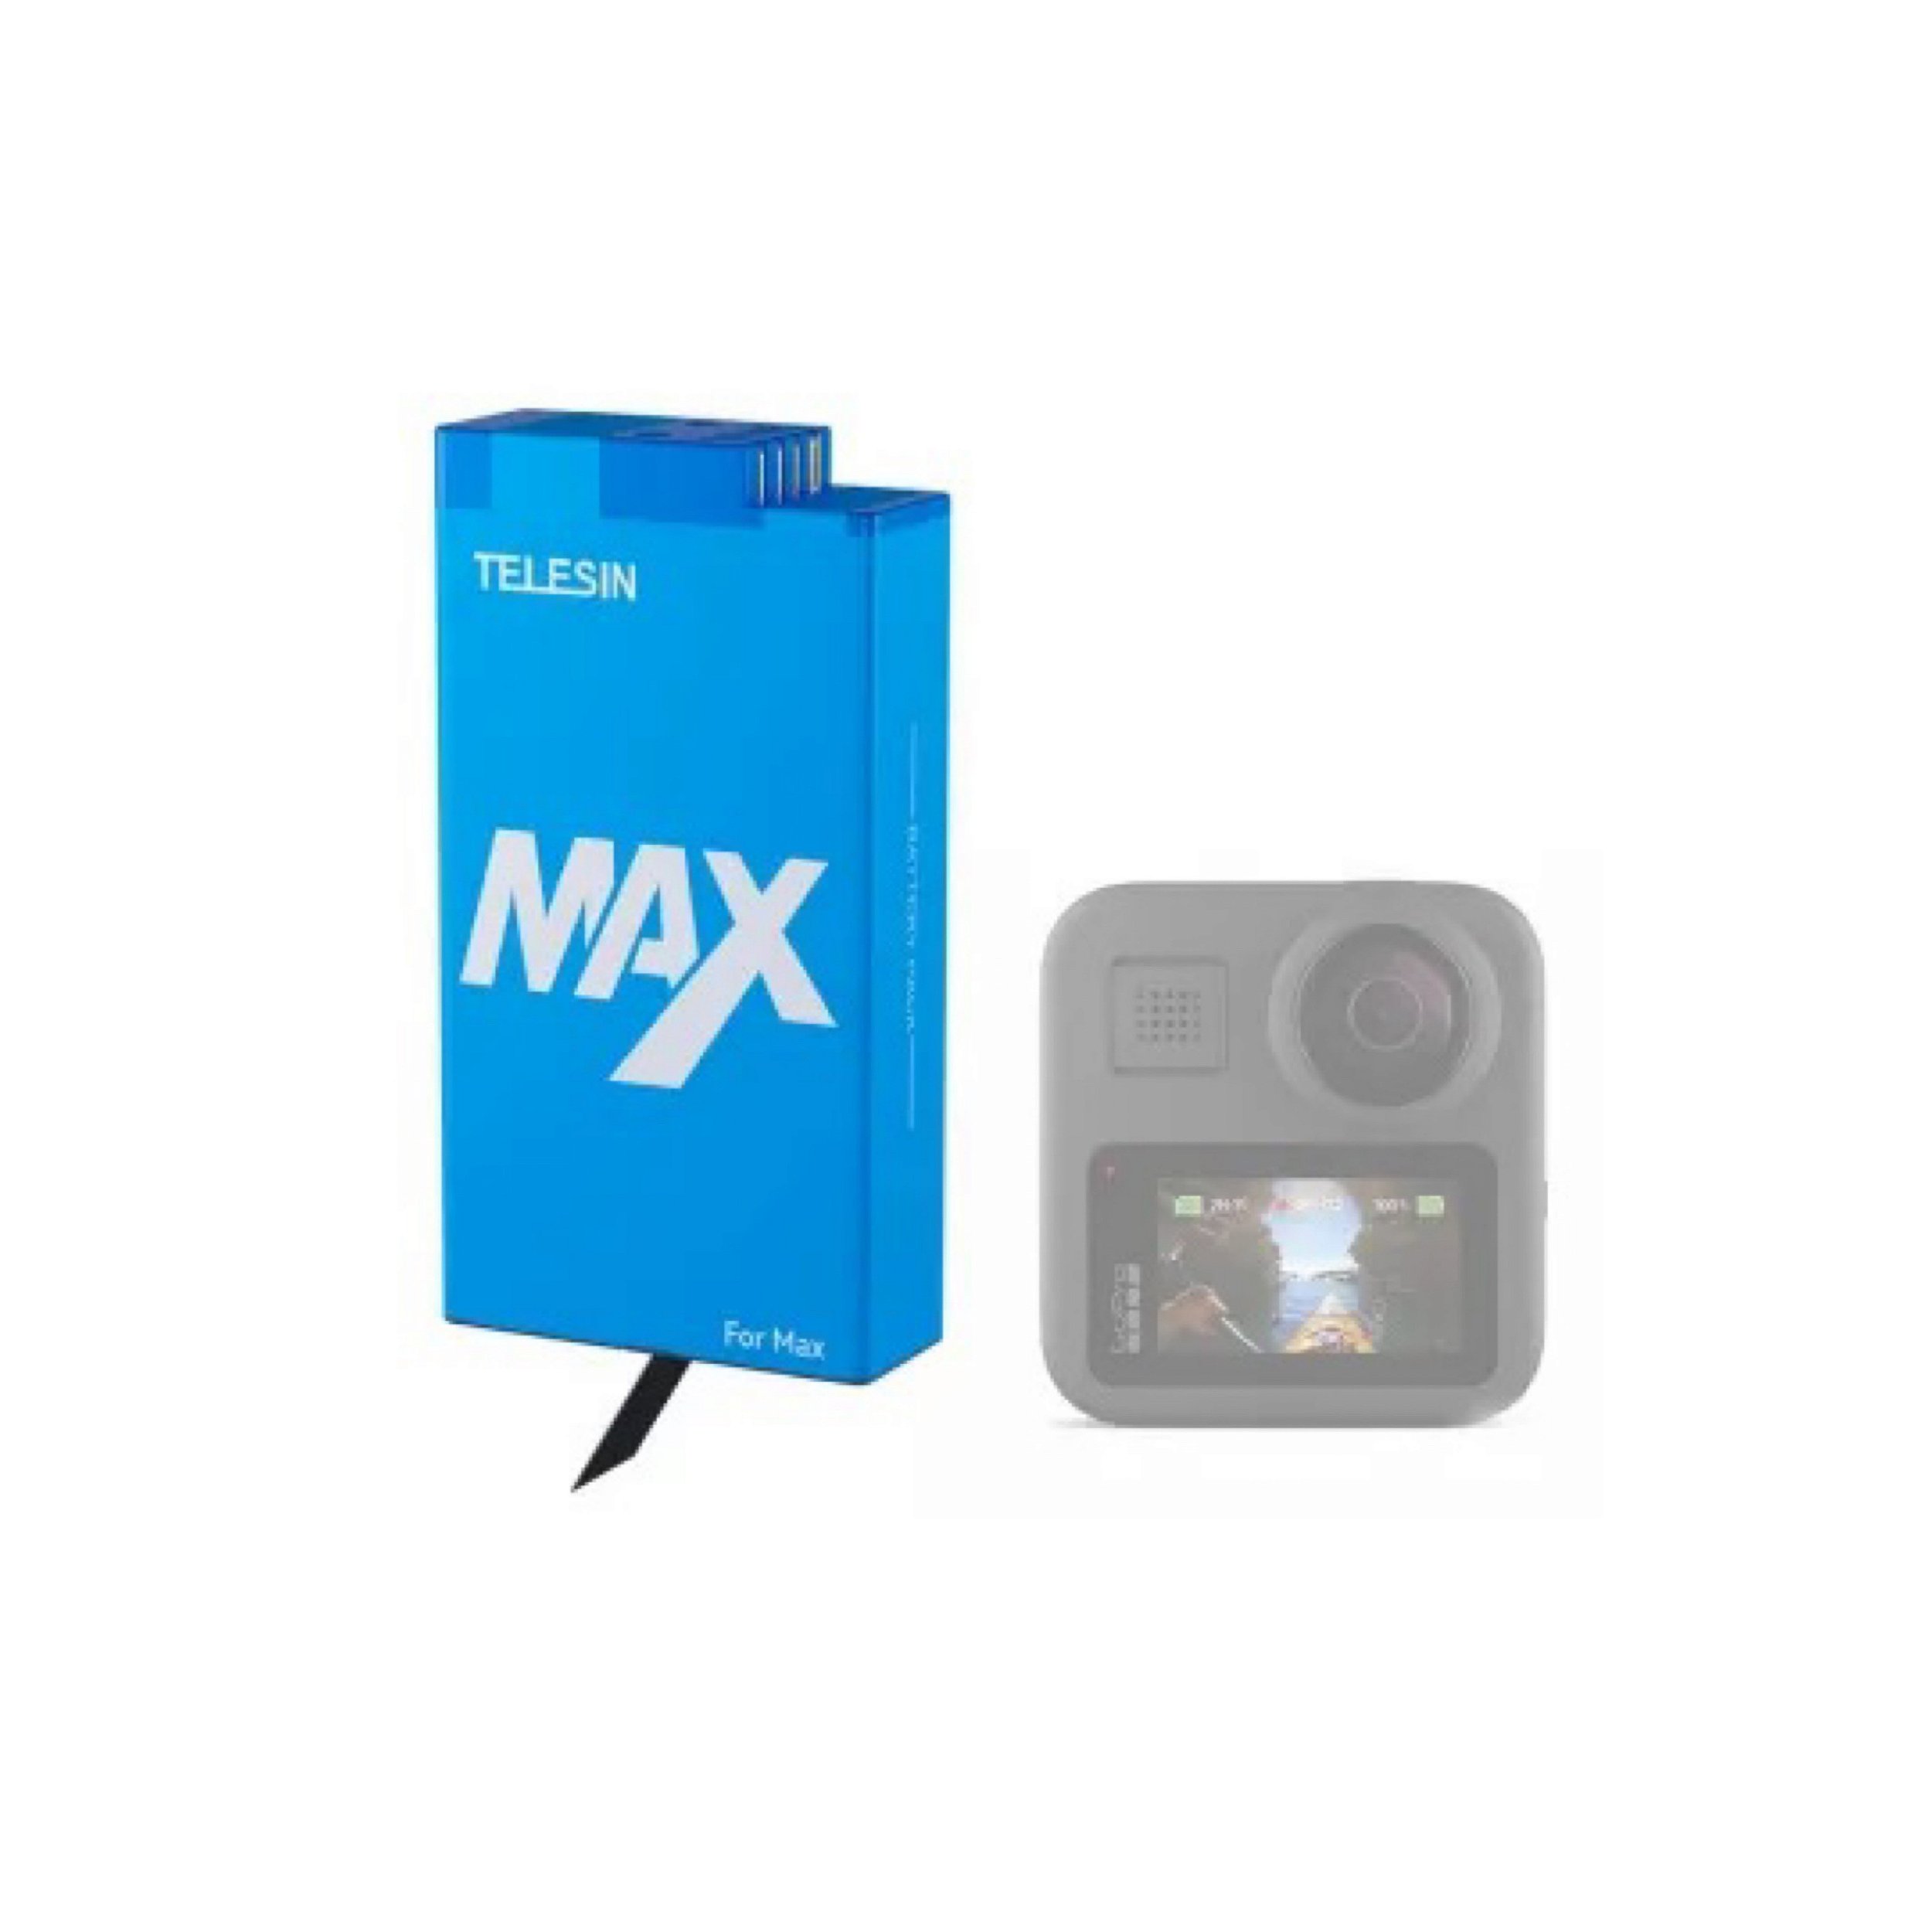 Bateria similar marca TELESIN 1600mAh para GoPro MAX 360 - GP-BTR-MAX -  NatalGoPro - Acessórios para câmeras Gopro, DJi Action Cam, SJCam, Sony e  de ação similares.